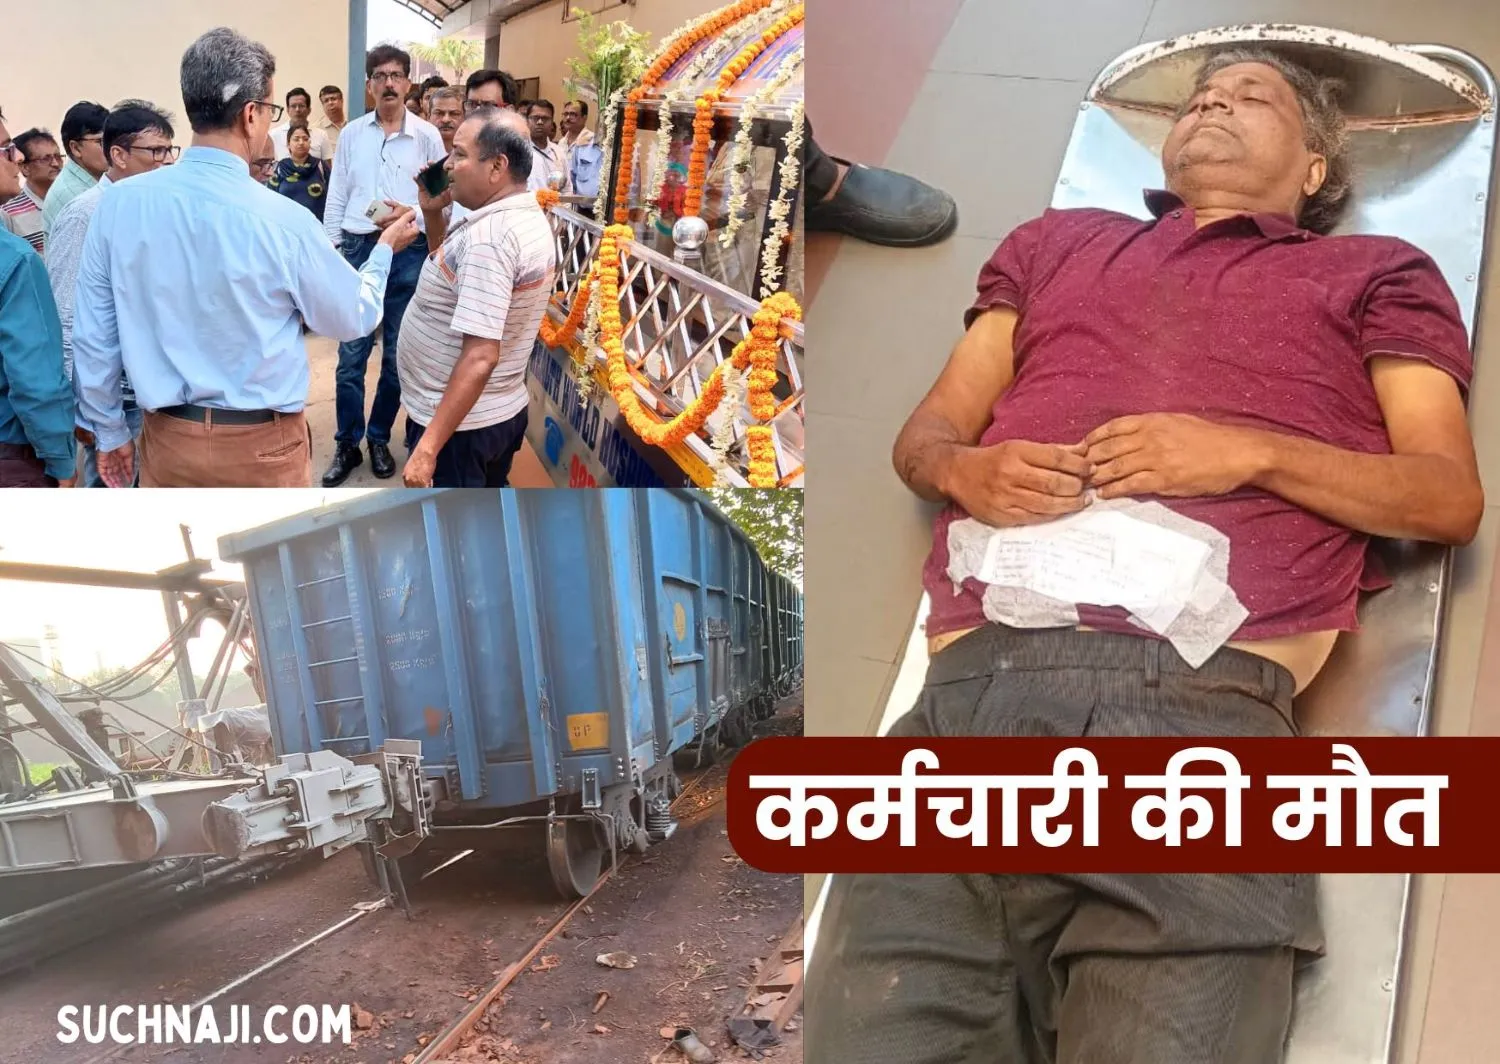 Durgapur Steel Plant: रेलवे लाइन पर कर्मचारी की तड़प कर मौत, ये था कारण, हुआ पोस्टमार्टम